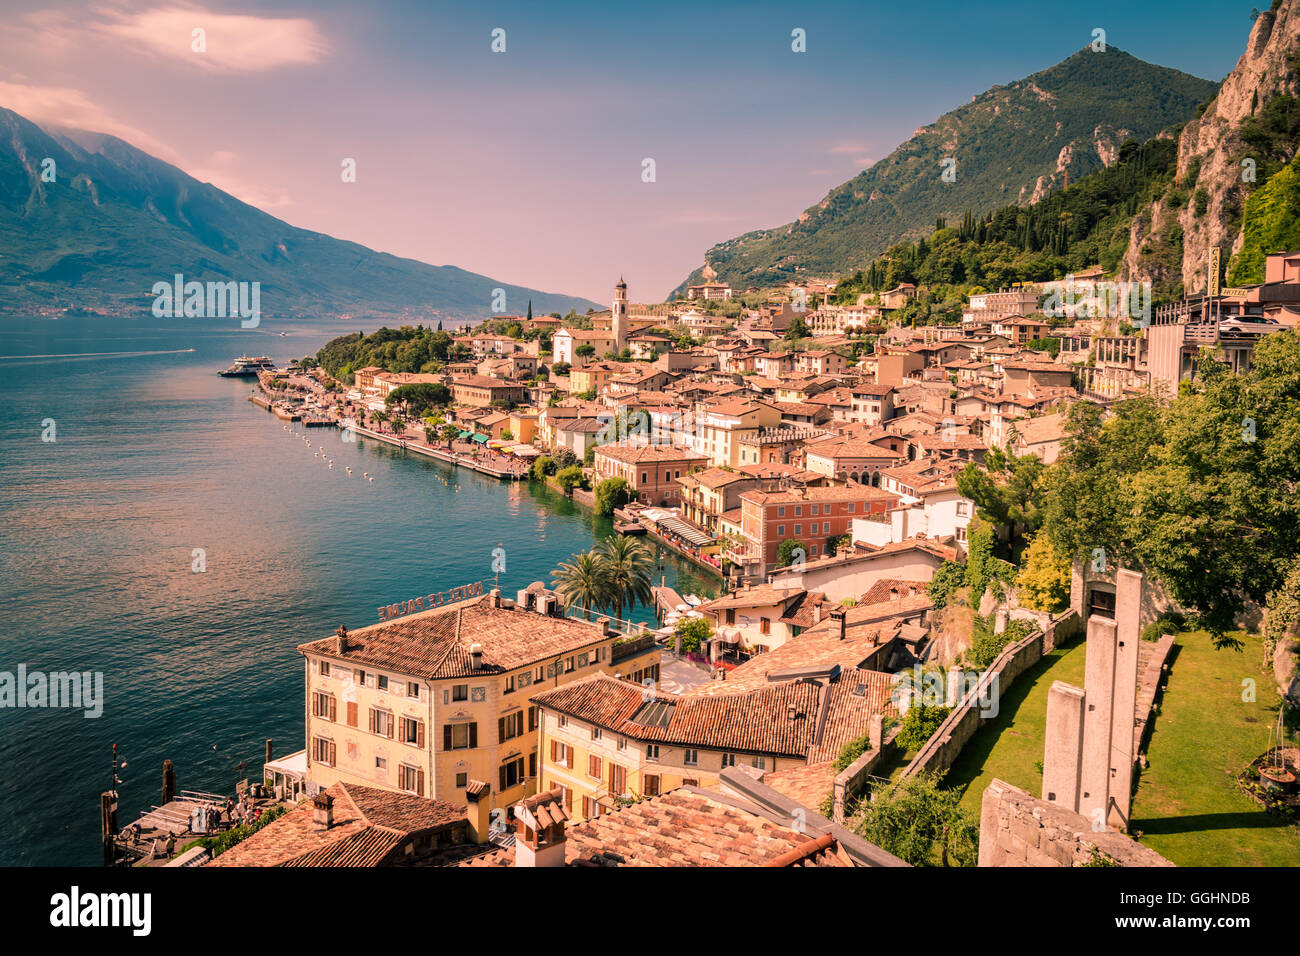 Panorama de Limone sul Garda, une petite ville sur le lac de Garde, Italie. Banque D'Images